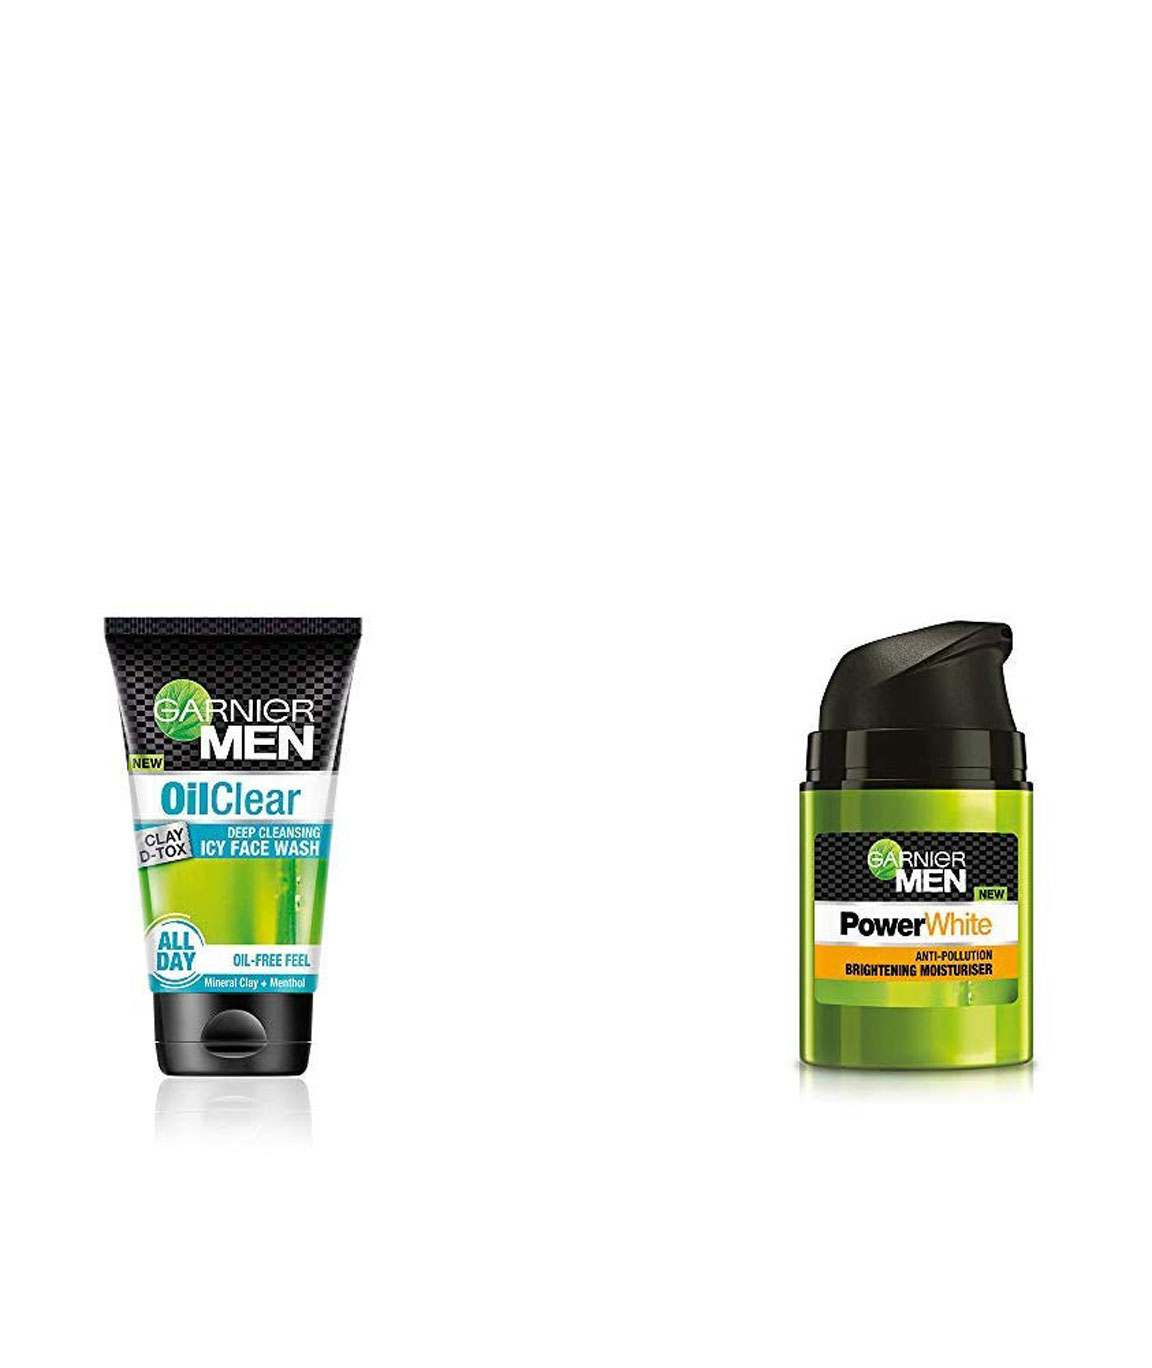 Garnier Men Oil Clear Clay D-Tox Deep Cleansing Icy Face Wash, 100gm & Garnier Men PowerWhite Anti-Pollution Brightening Moisturiser,50g